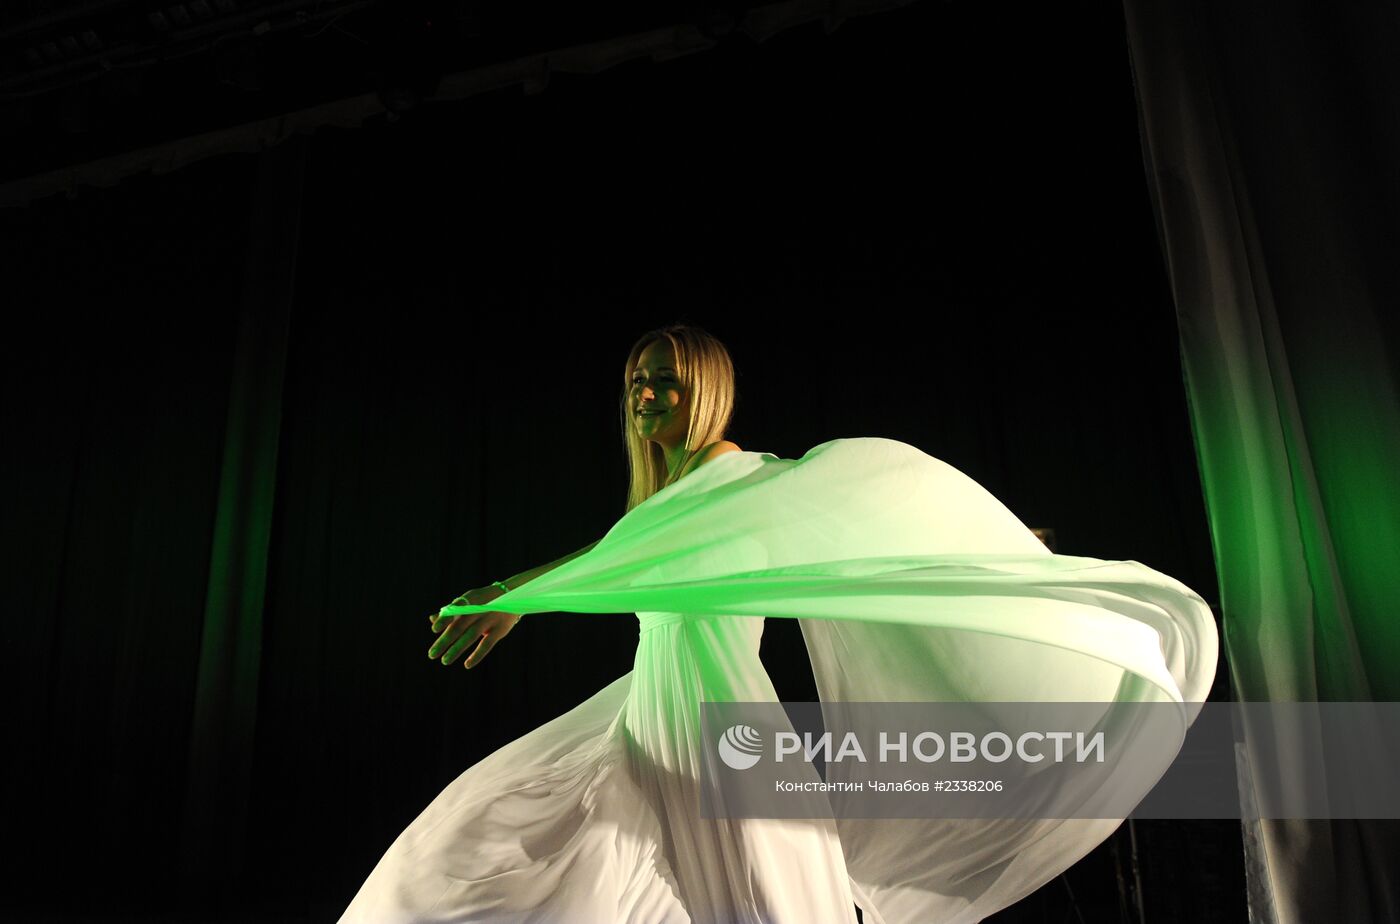 Финал конкурса "Мисс Россия 2014" - "Мисс Великий Новгород"